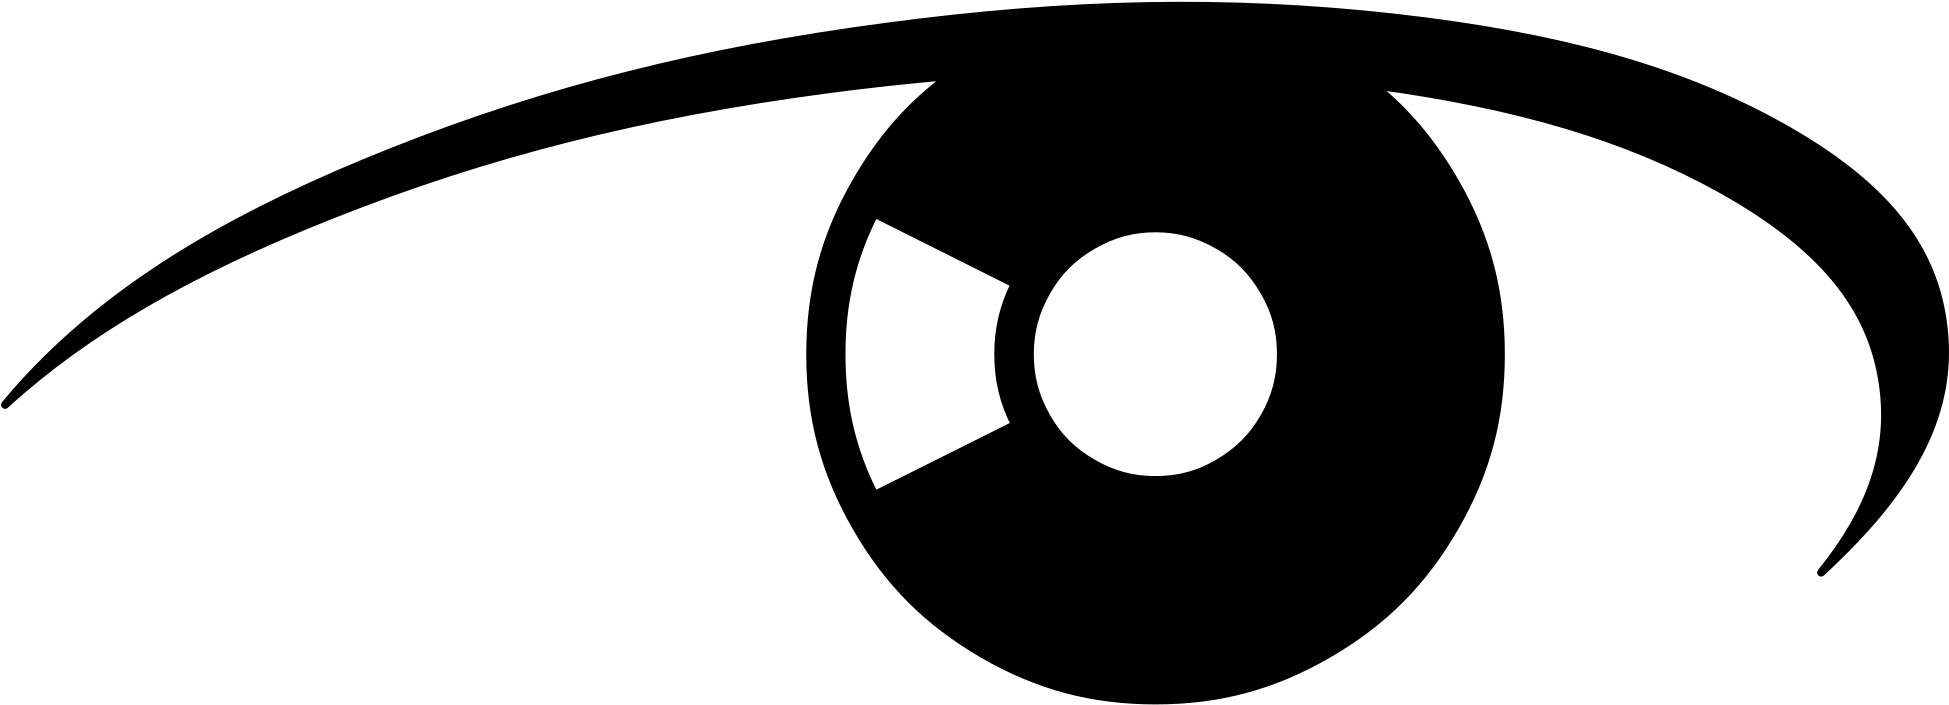 Open - Global Surveillance Logo (2000x800)